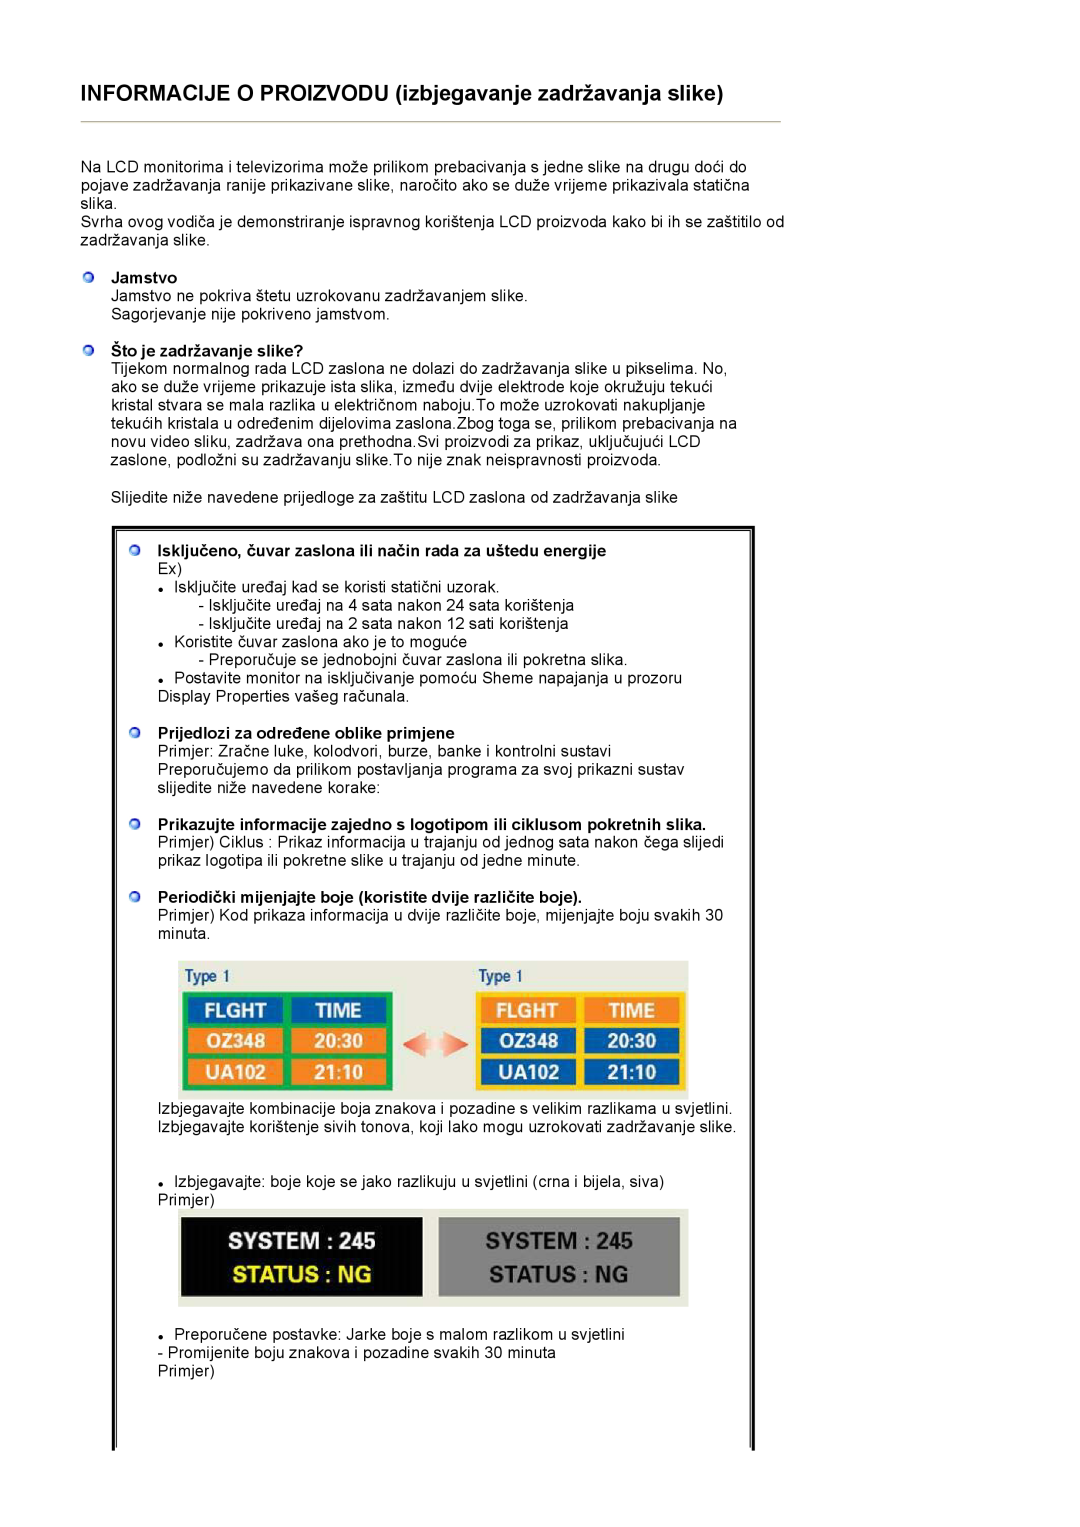 Samsung LS17HJDQHV/EDC manual INFORMACIJE O PROIZVODU izbjegavanje zadržavanja slike, Jamstvo, Što je zadržavanje slike? 